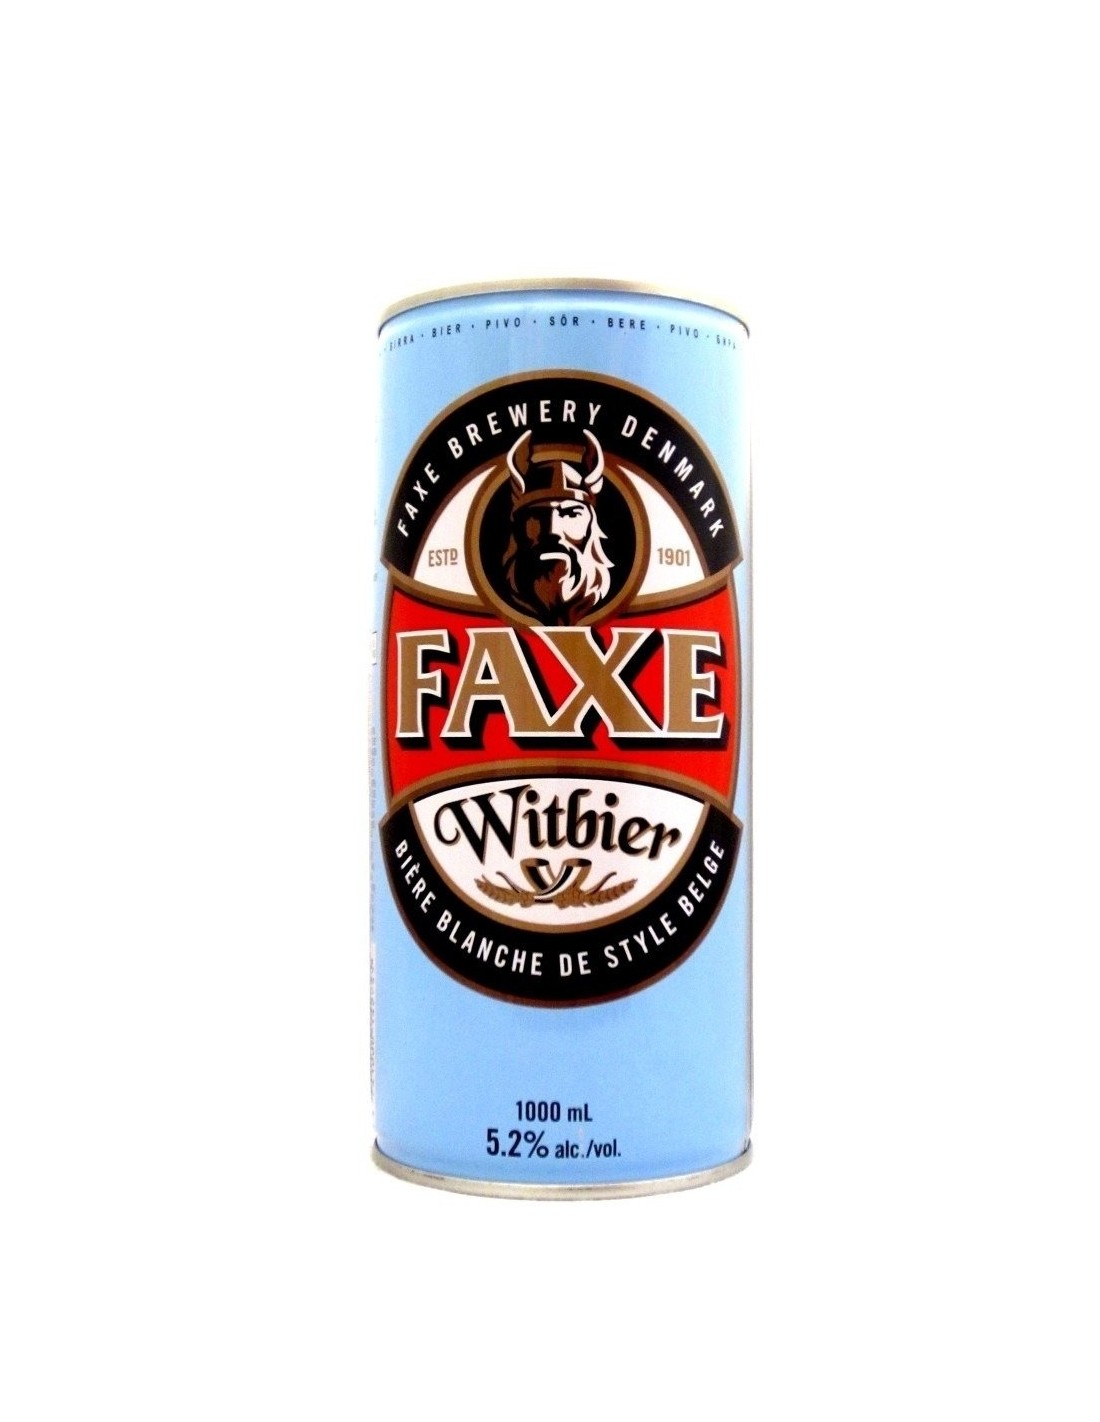 Bere alba, nefiltrata Faxe Witbier, 5.2% alc., 1L, Danemarca alcooldiscount.ro